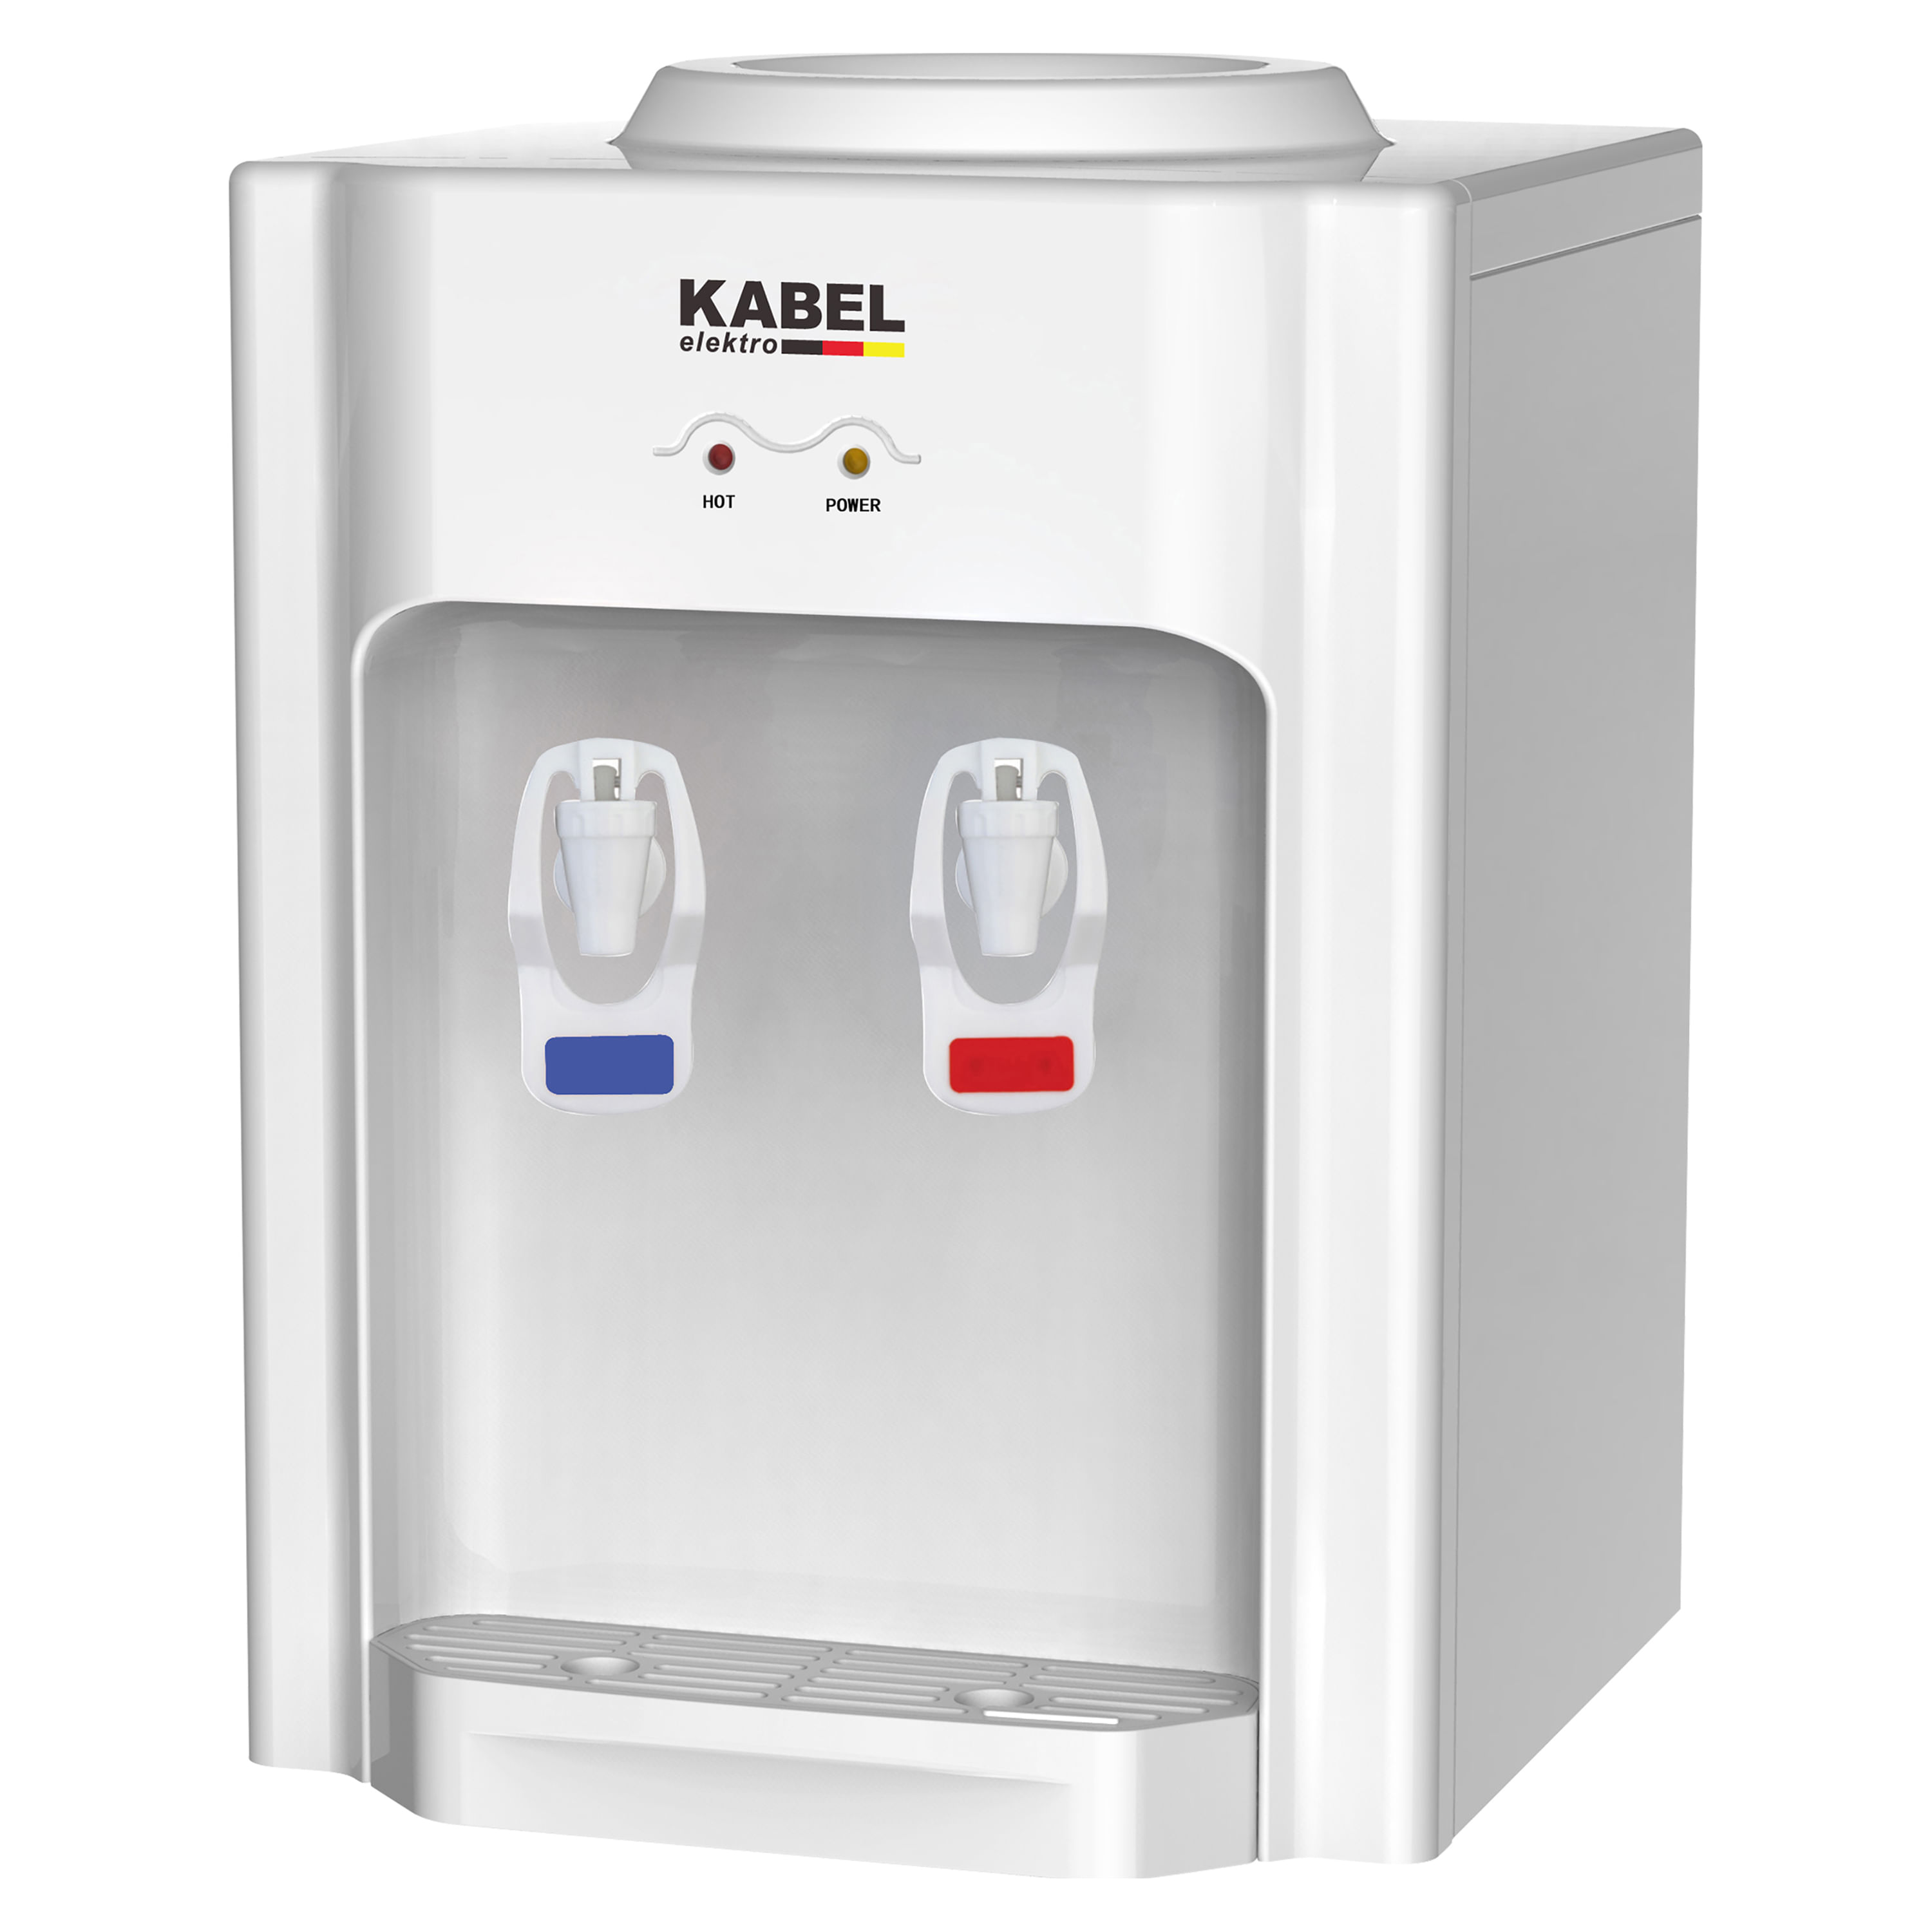 dispensador de agua para nevera – Compra dispensador de agua para nevera  con envío gratis en AliExpress version